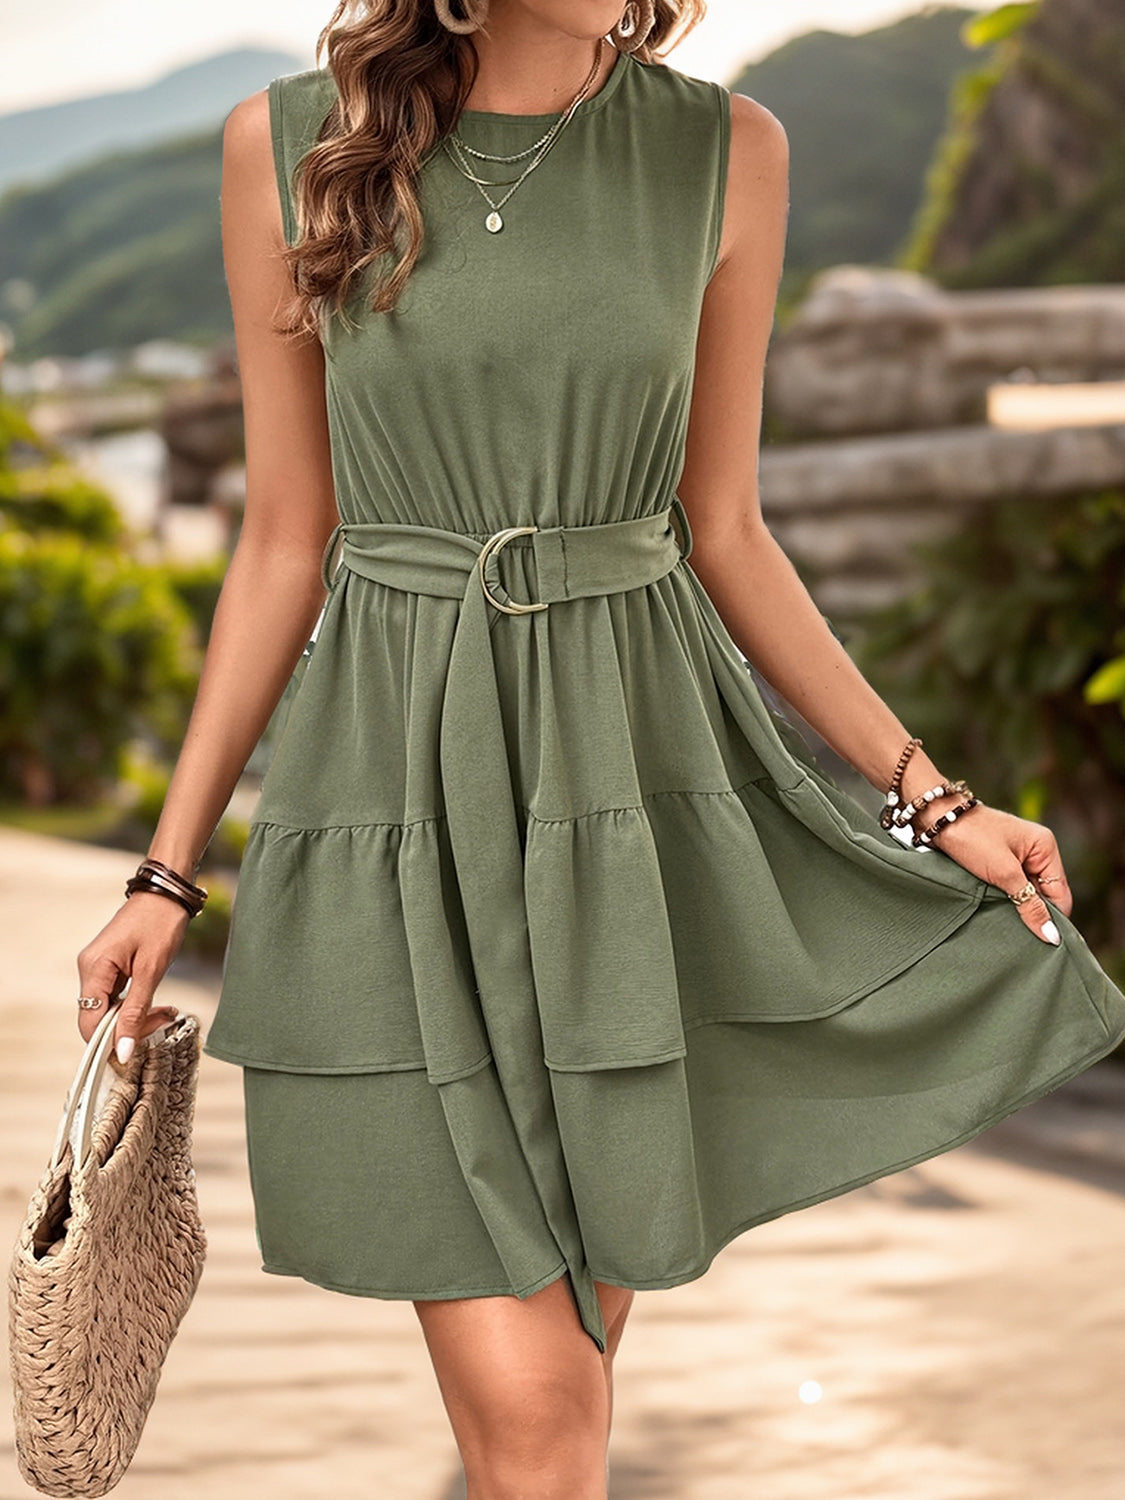 Tiered Dress Mini | Ruffled Tiered Mini Dress in Moss | Mini Dress with Tied Waist